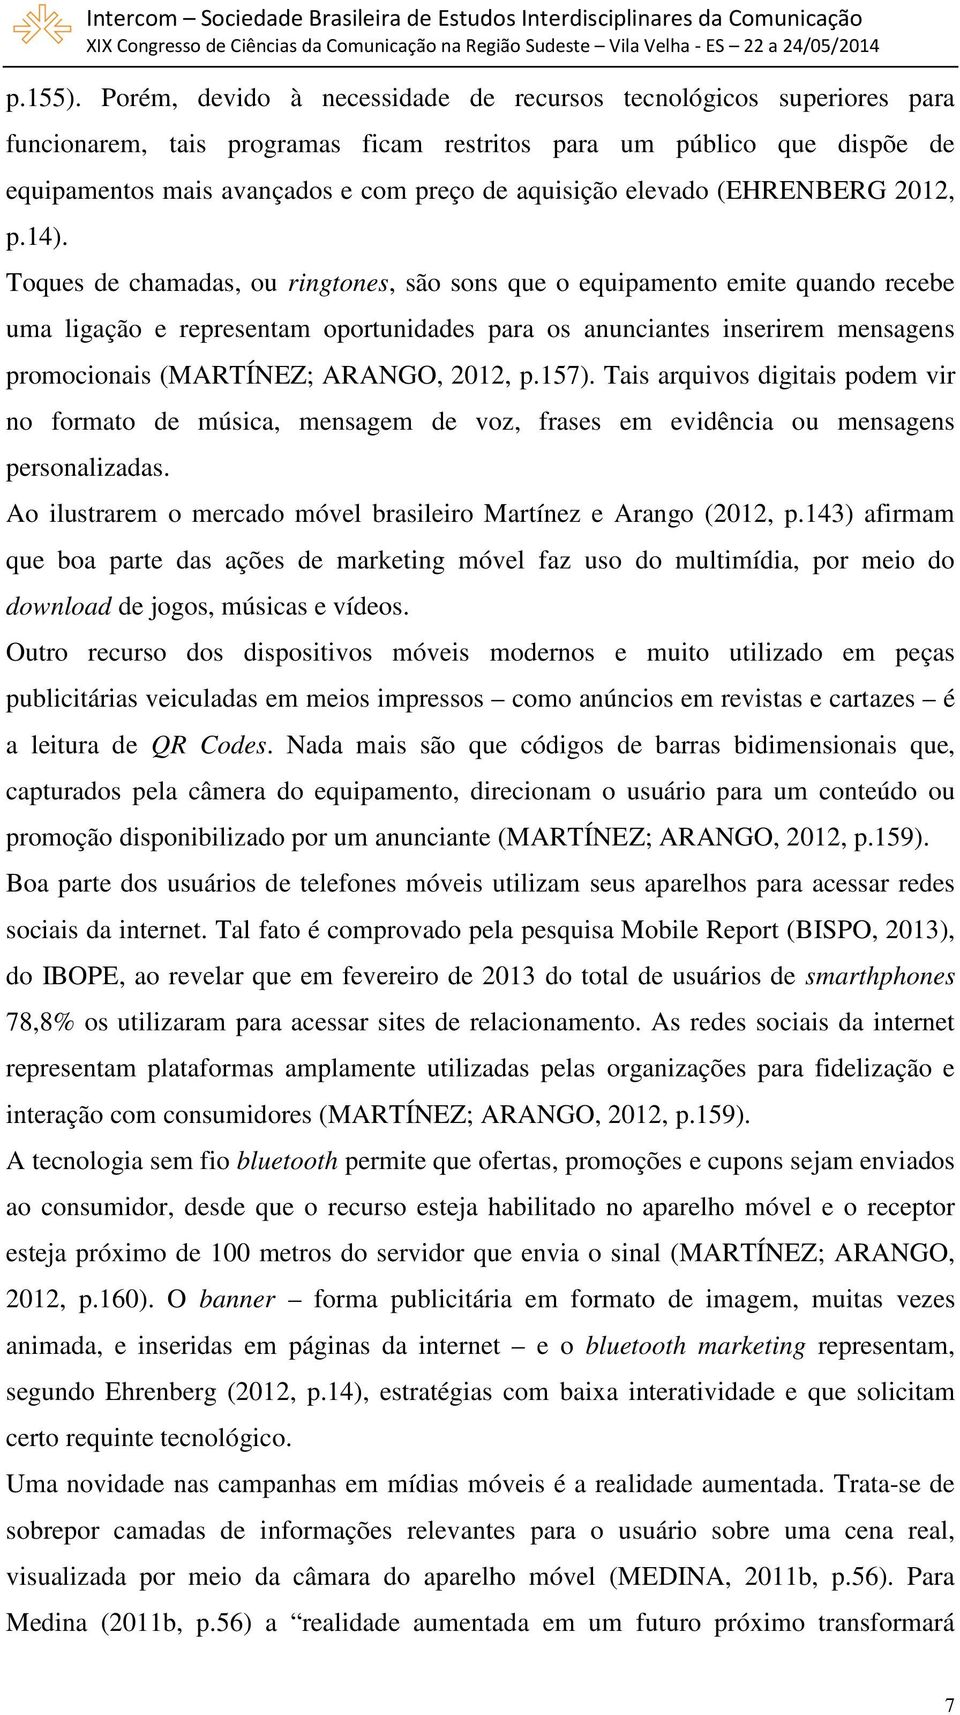 elevado (EHRENBERG 2012, p.14).